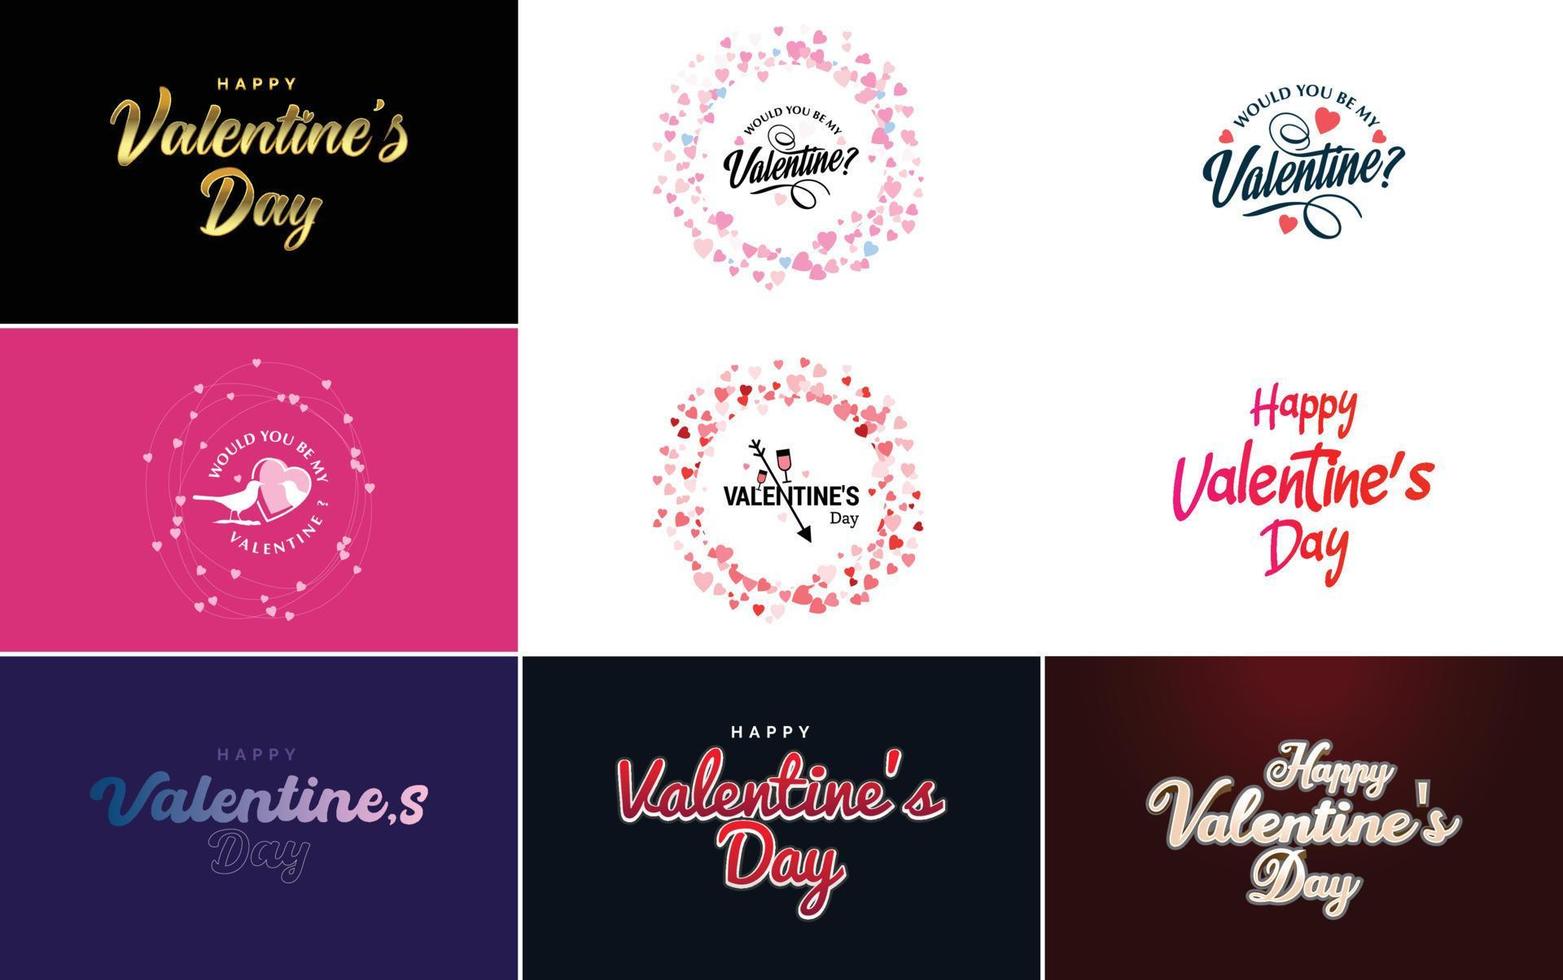 modelo de cartão feliz dia dos namorados com um tema romântico e um esquema de cores vermelho e rosa vetor